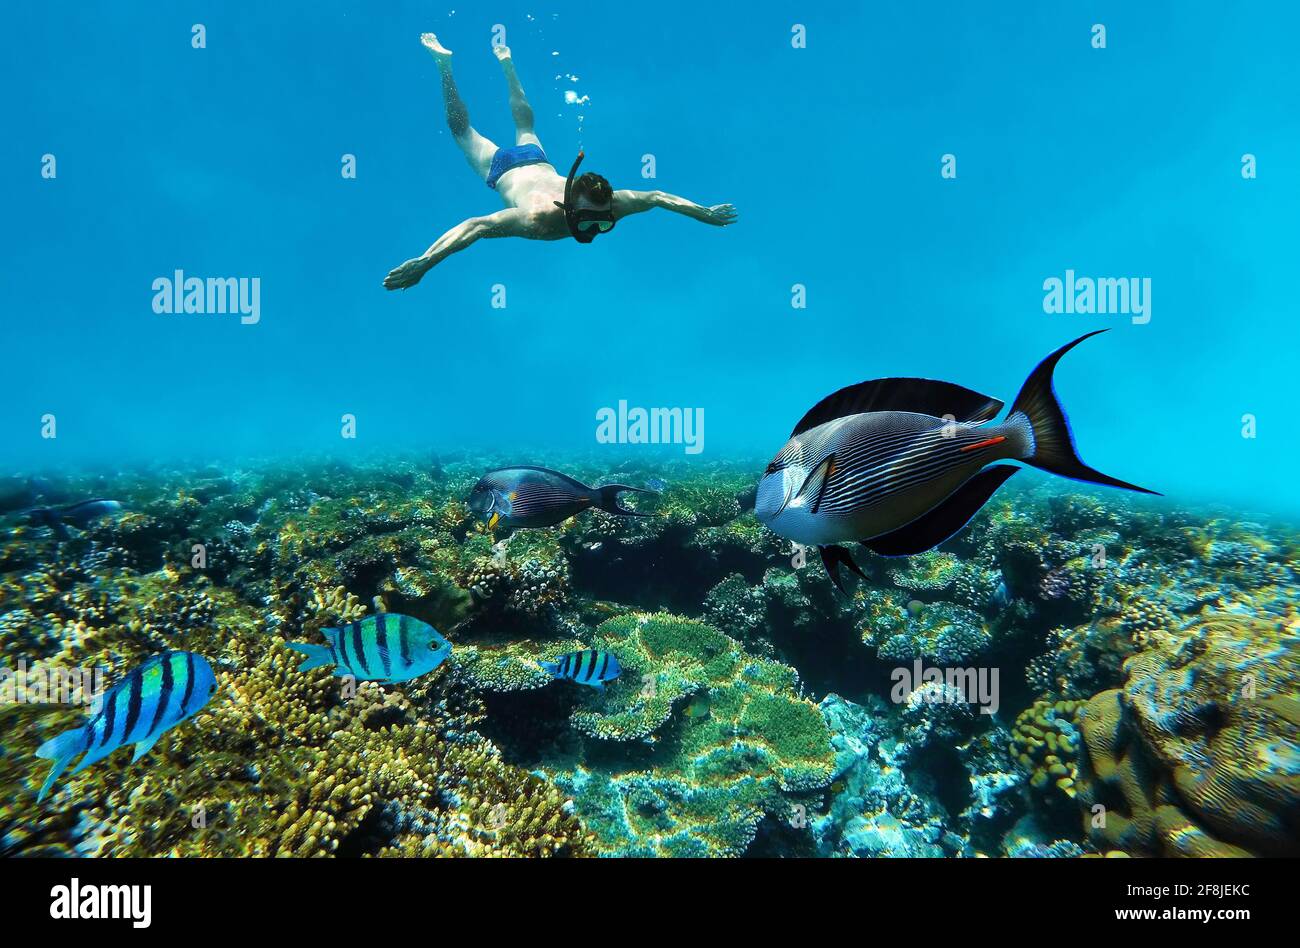 Snorkeling sott'acqua nella barriera corallina Foto Stock